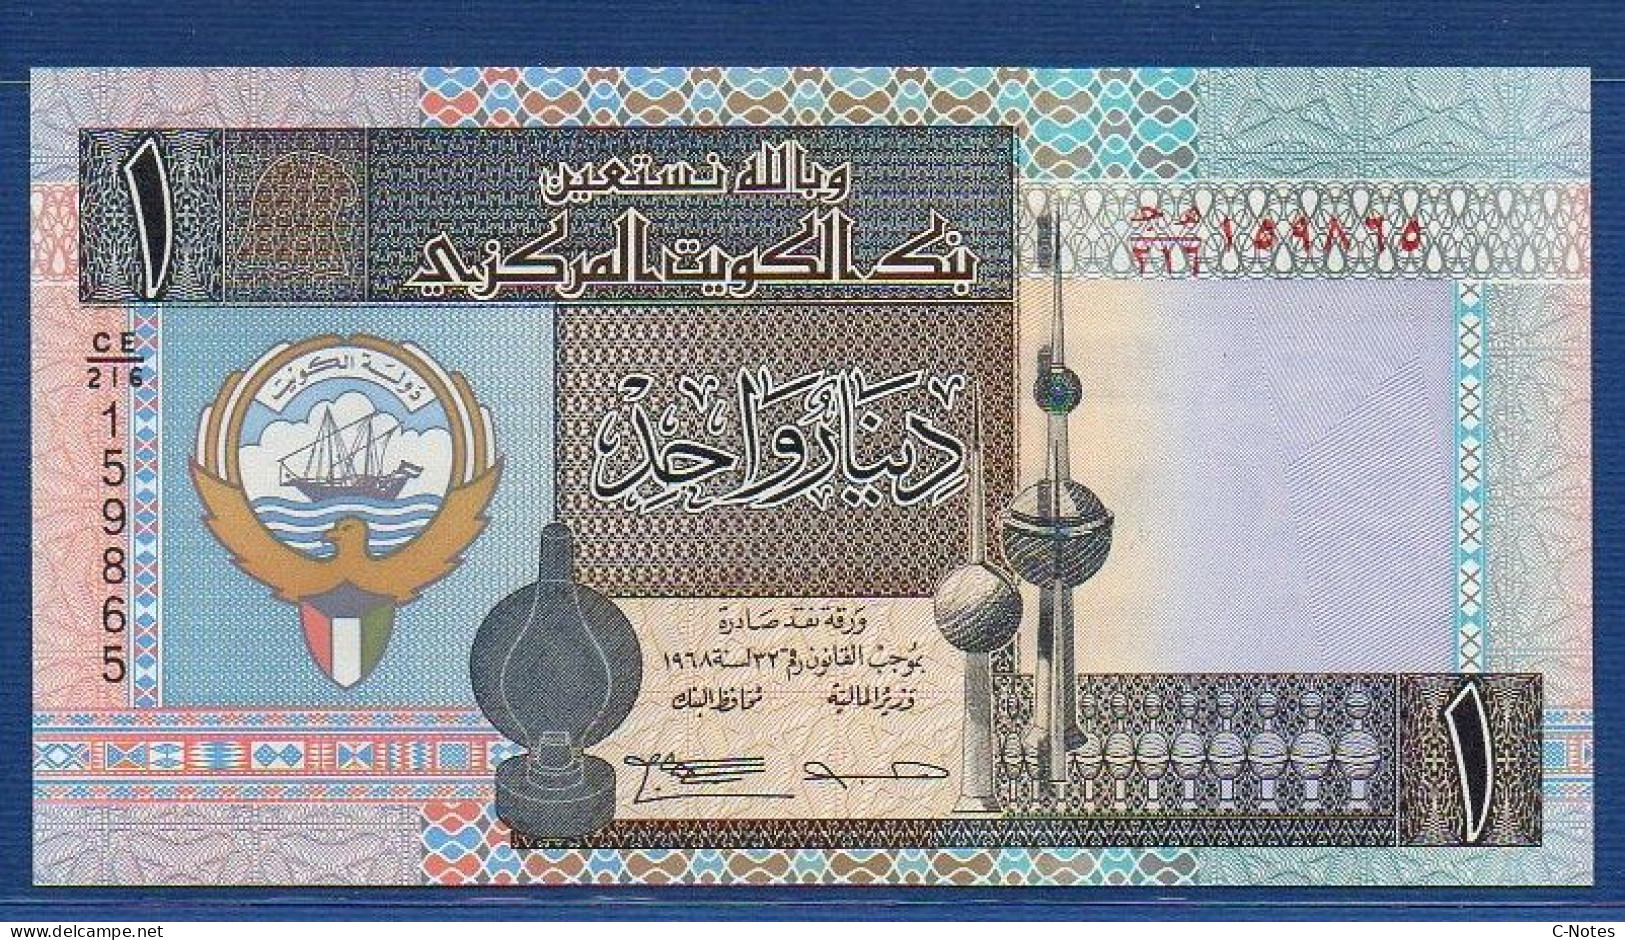 KUWAIT - P.25f – 1 Dinar 1994 UNC, S/n CE/216 159865 - Kuwait